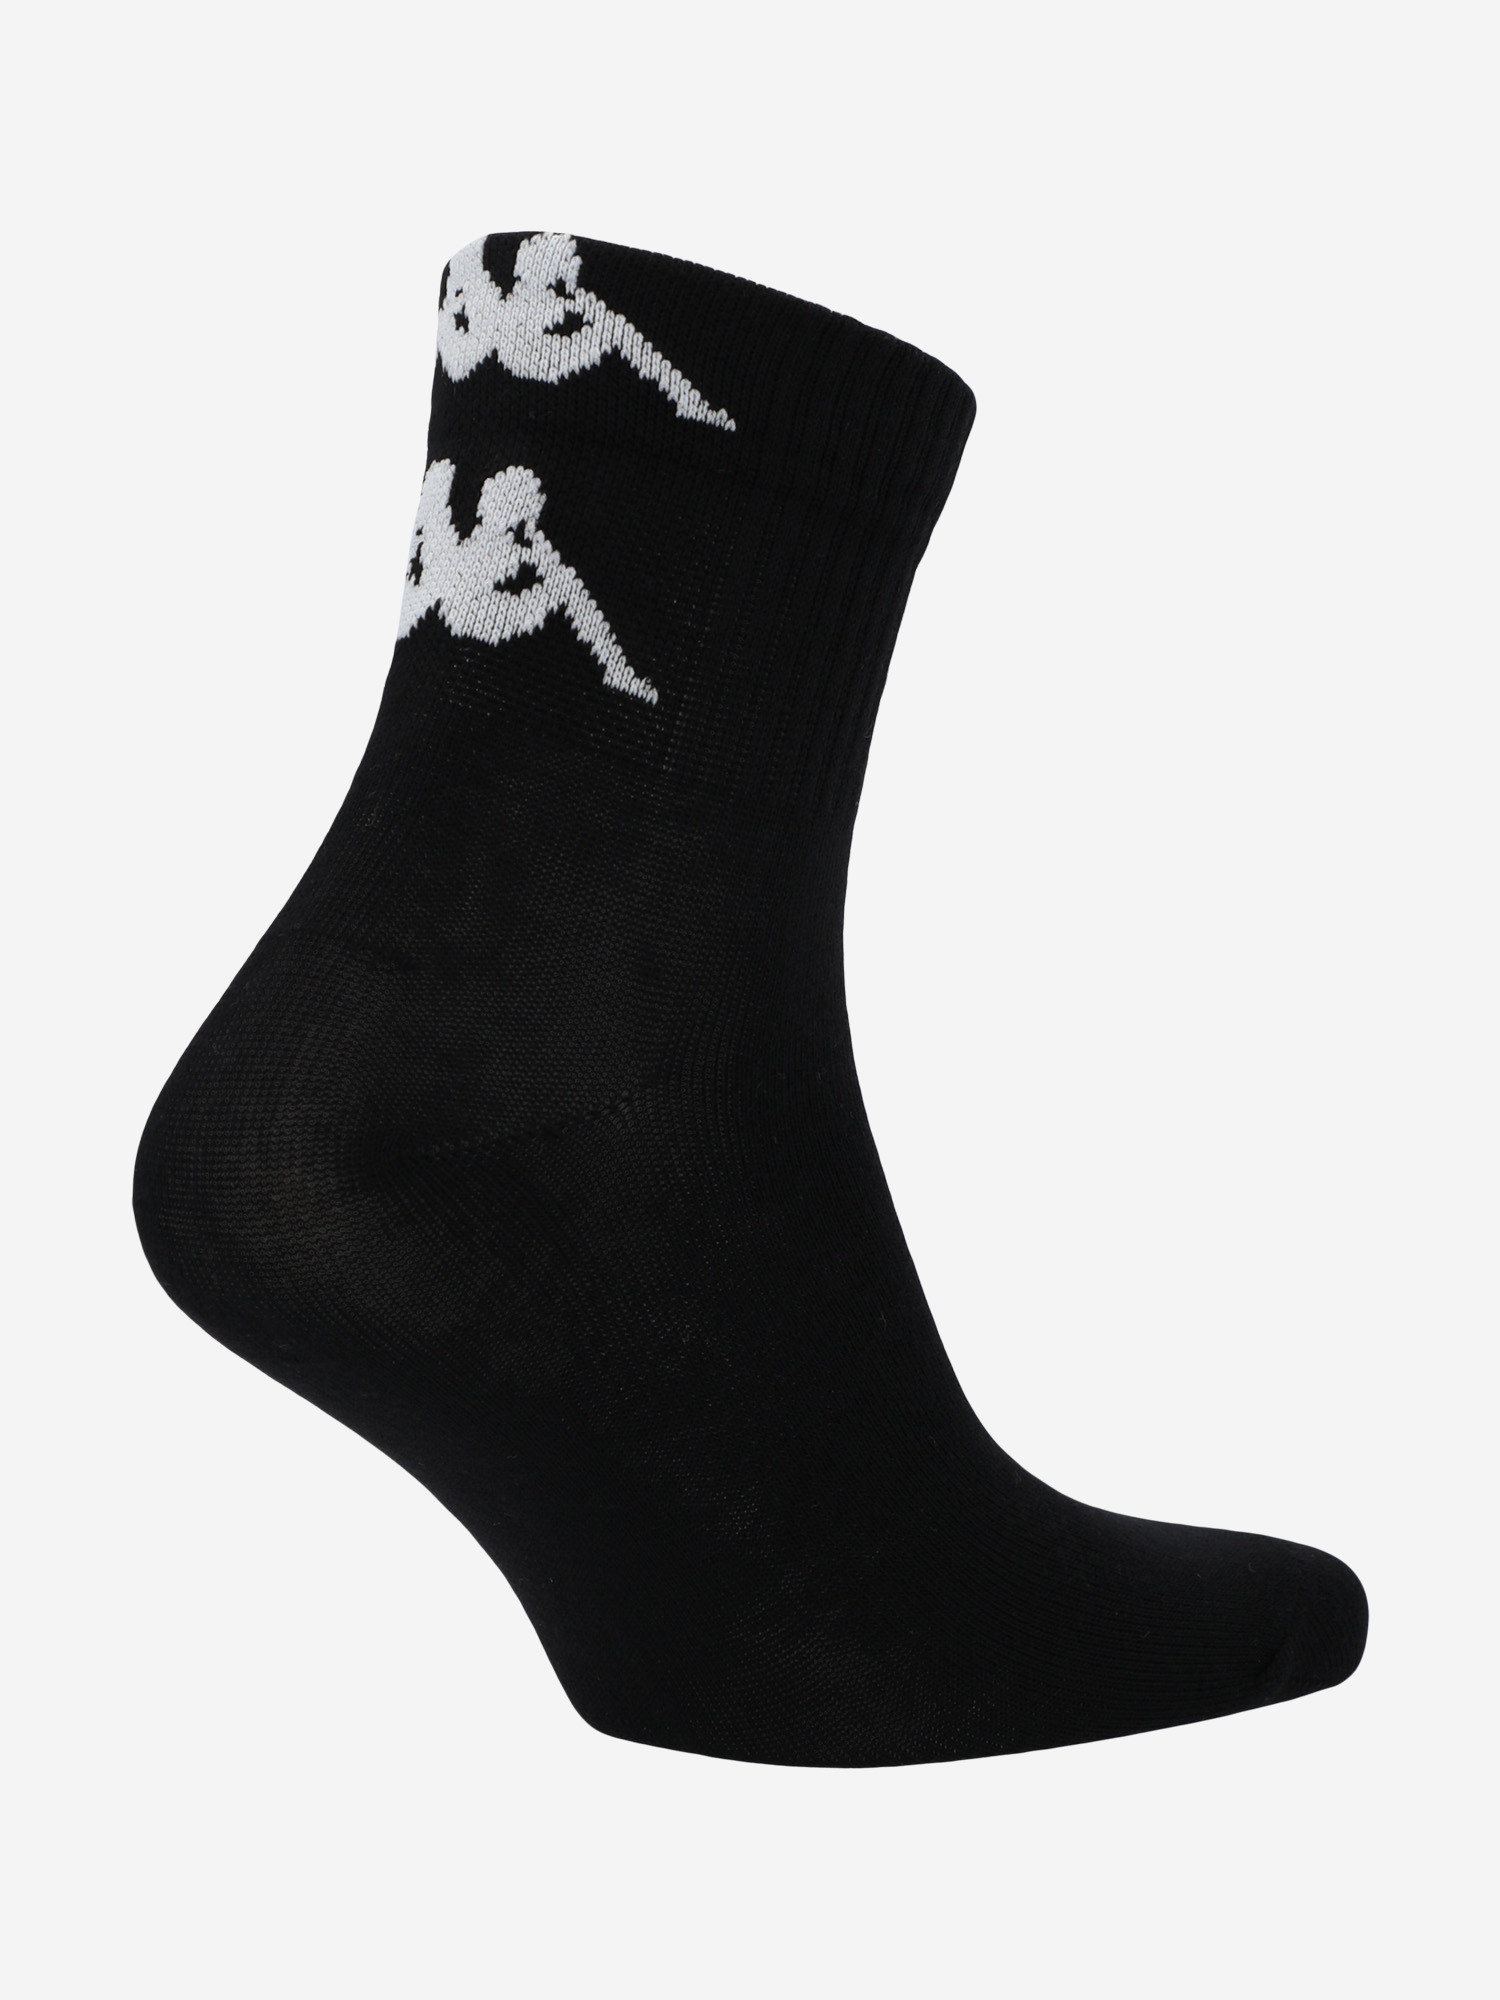 Шкарпетки жіночі Kappa, 2 пари